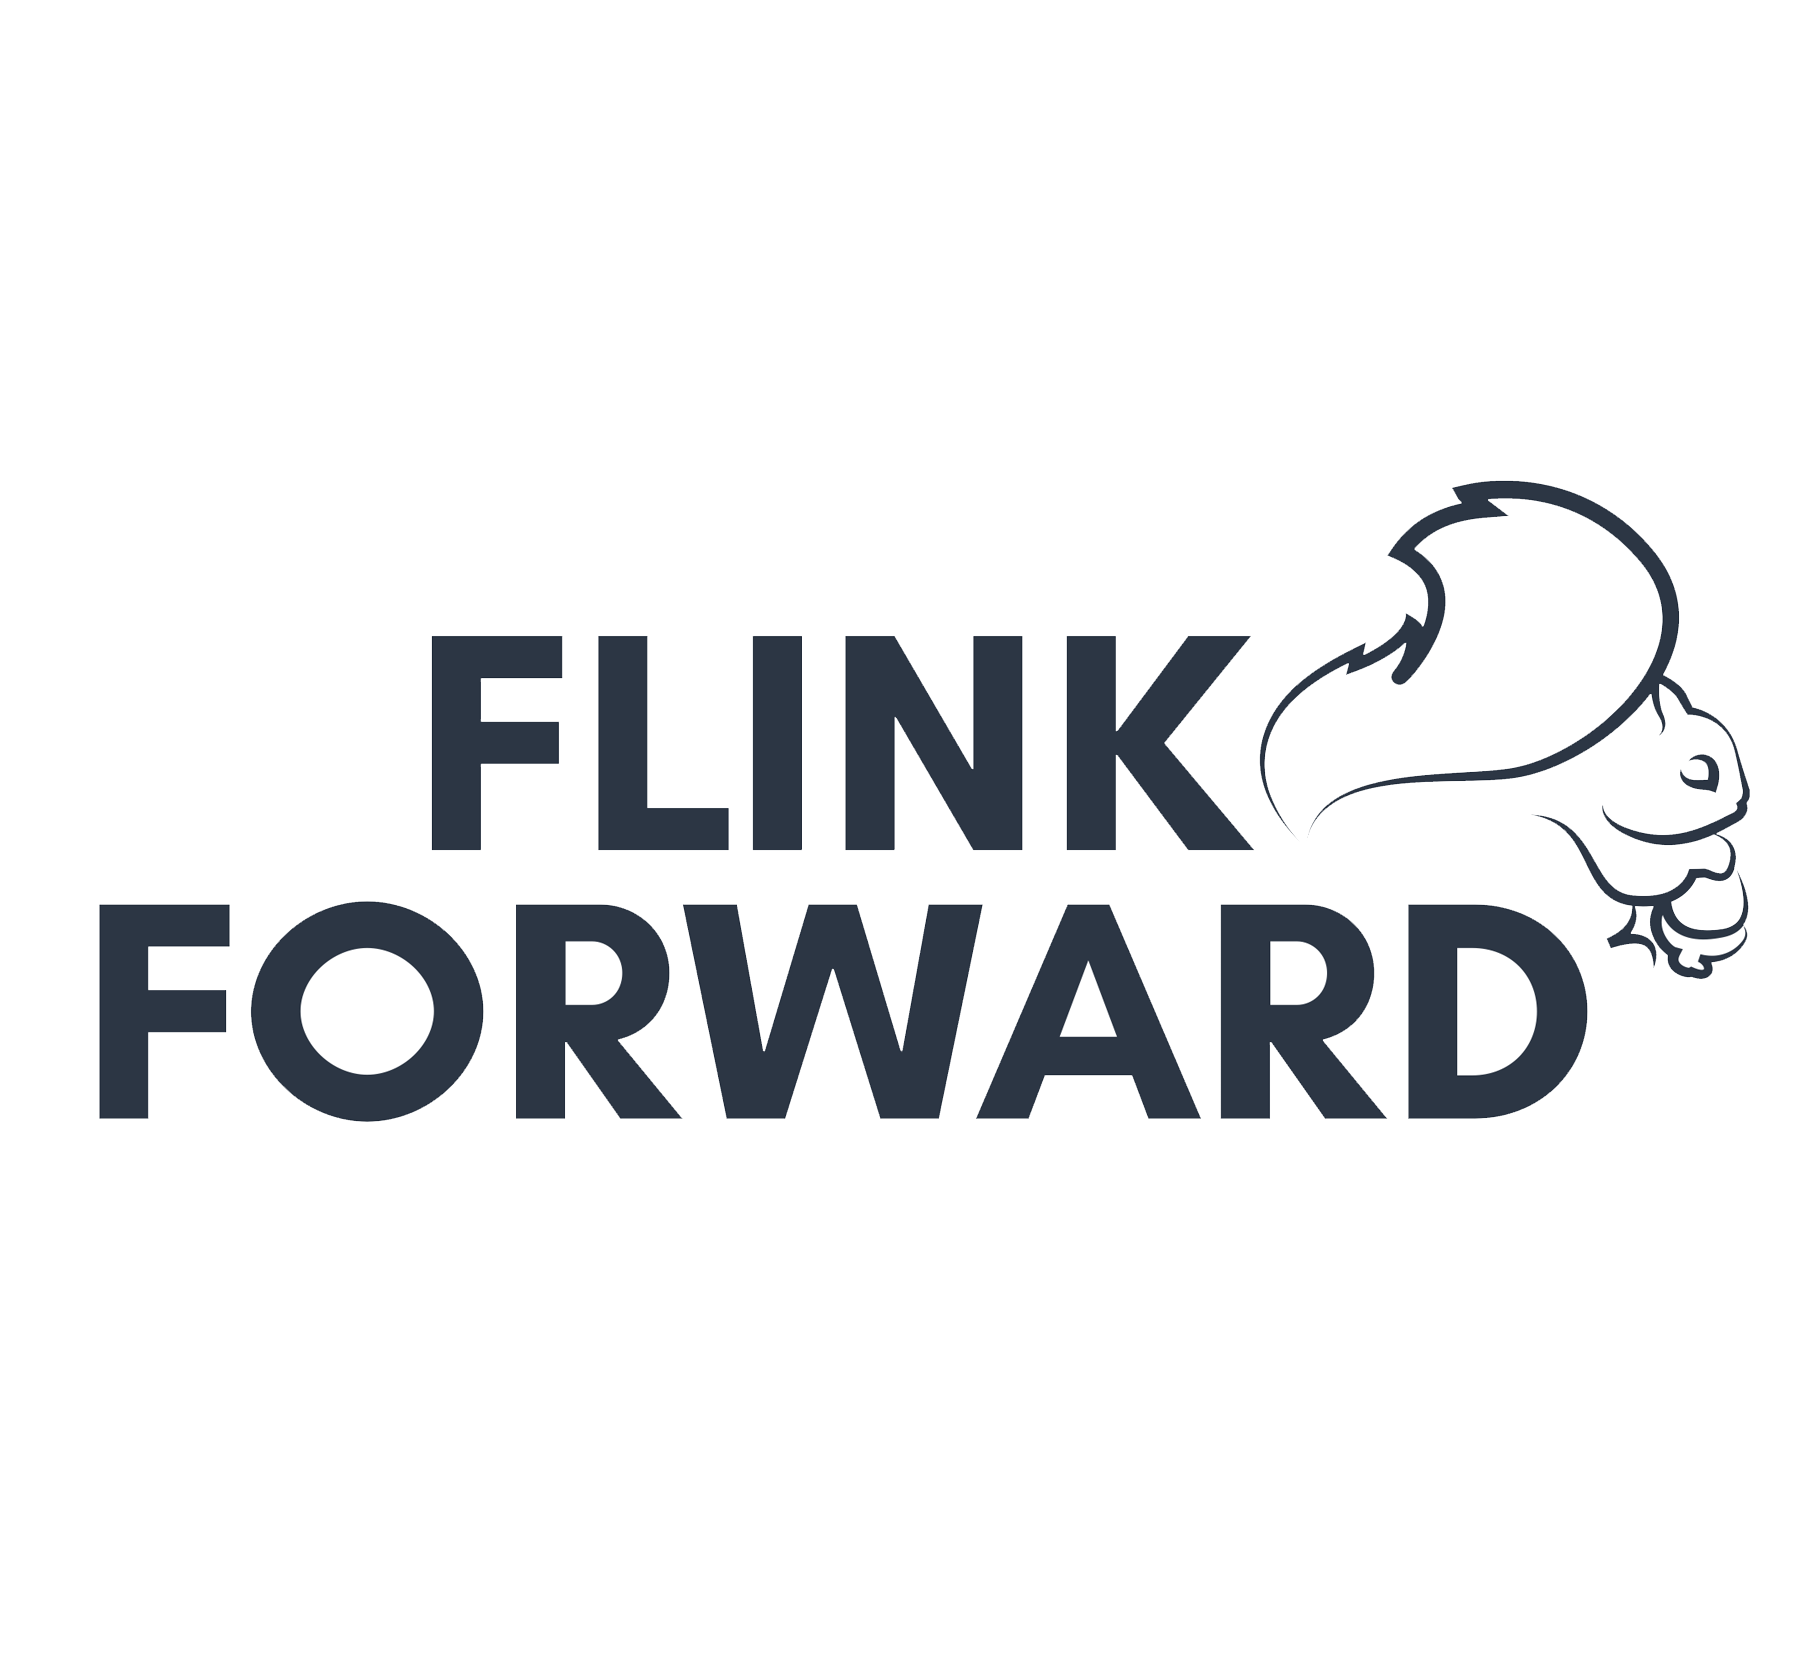 Flink Forward The Apache Flink conference